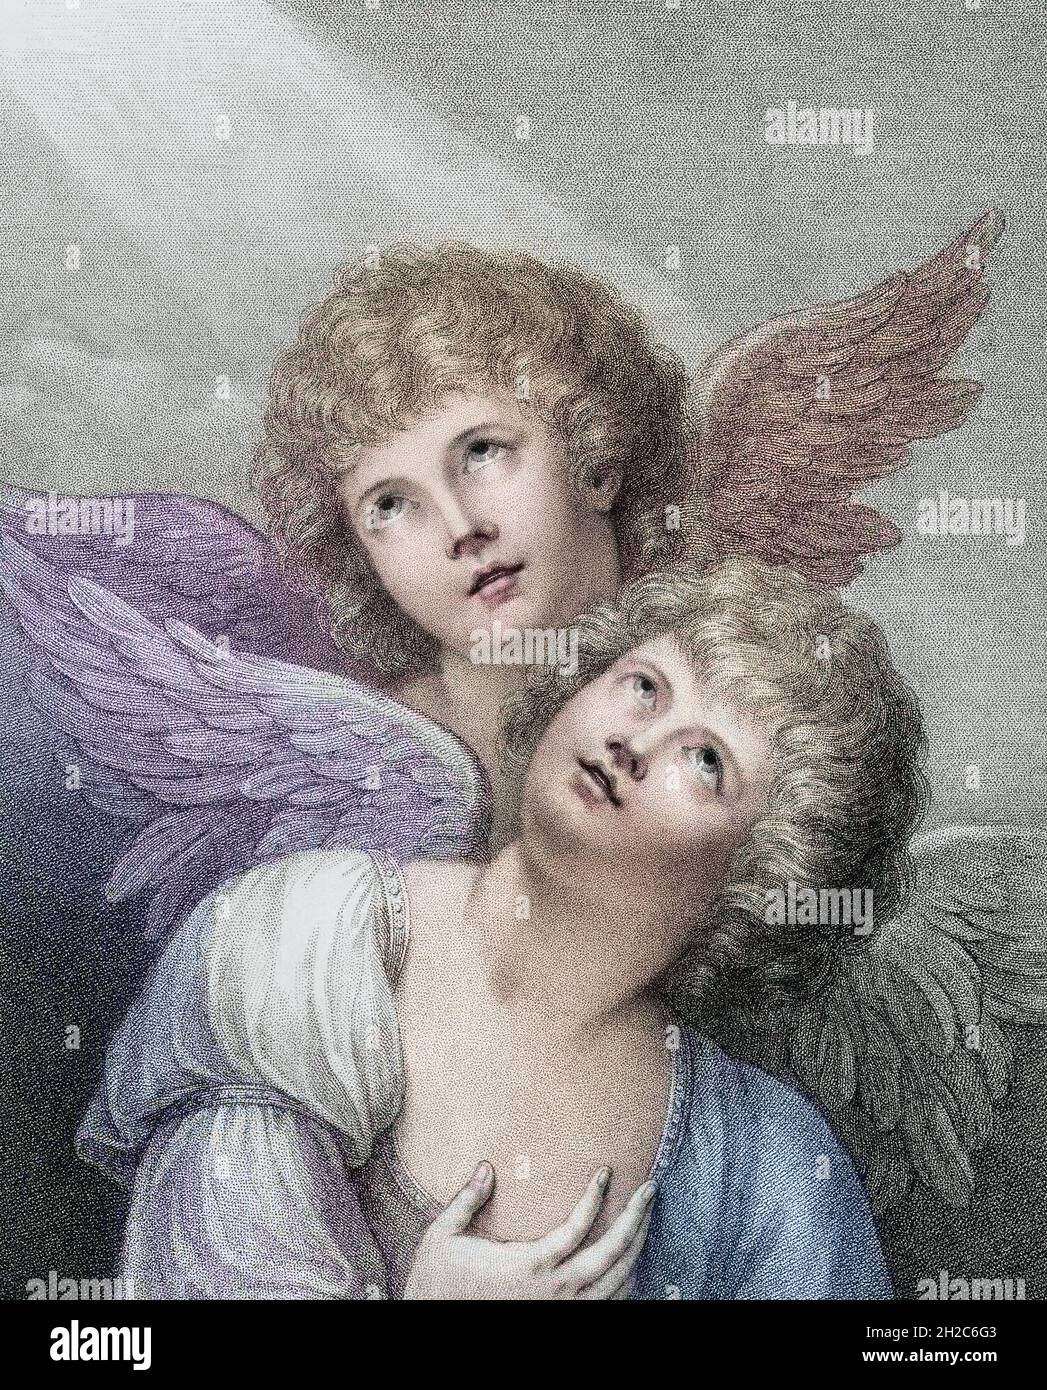 Zwei Cherubim. Zwei Engel. Nach einem Stich von Francesco Bartolozzi aus dem späten 18. Jahrhundert nach einem Werk von Matthew William Peters. Spätere Farbgebung. Stockfoto